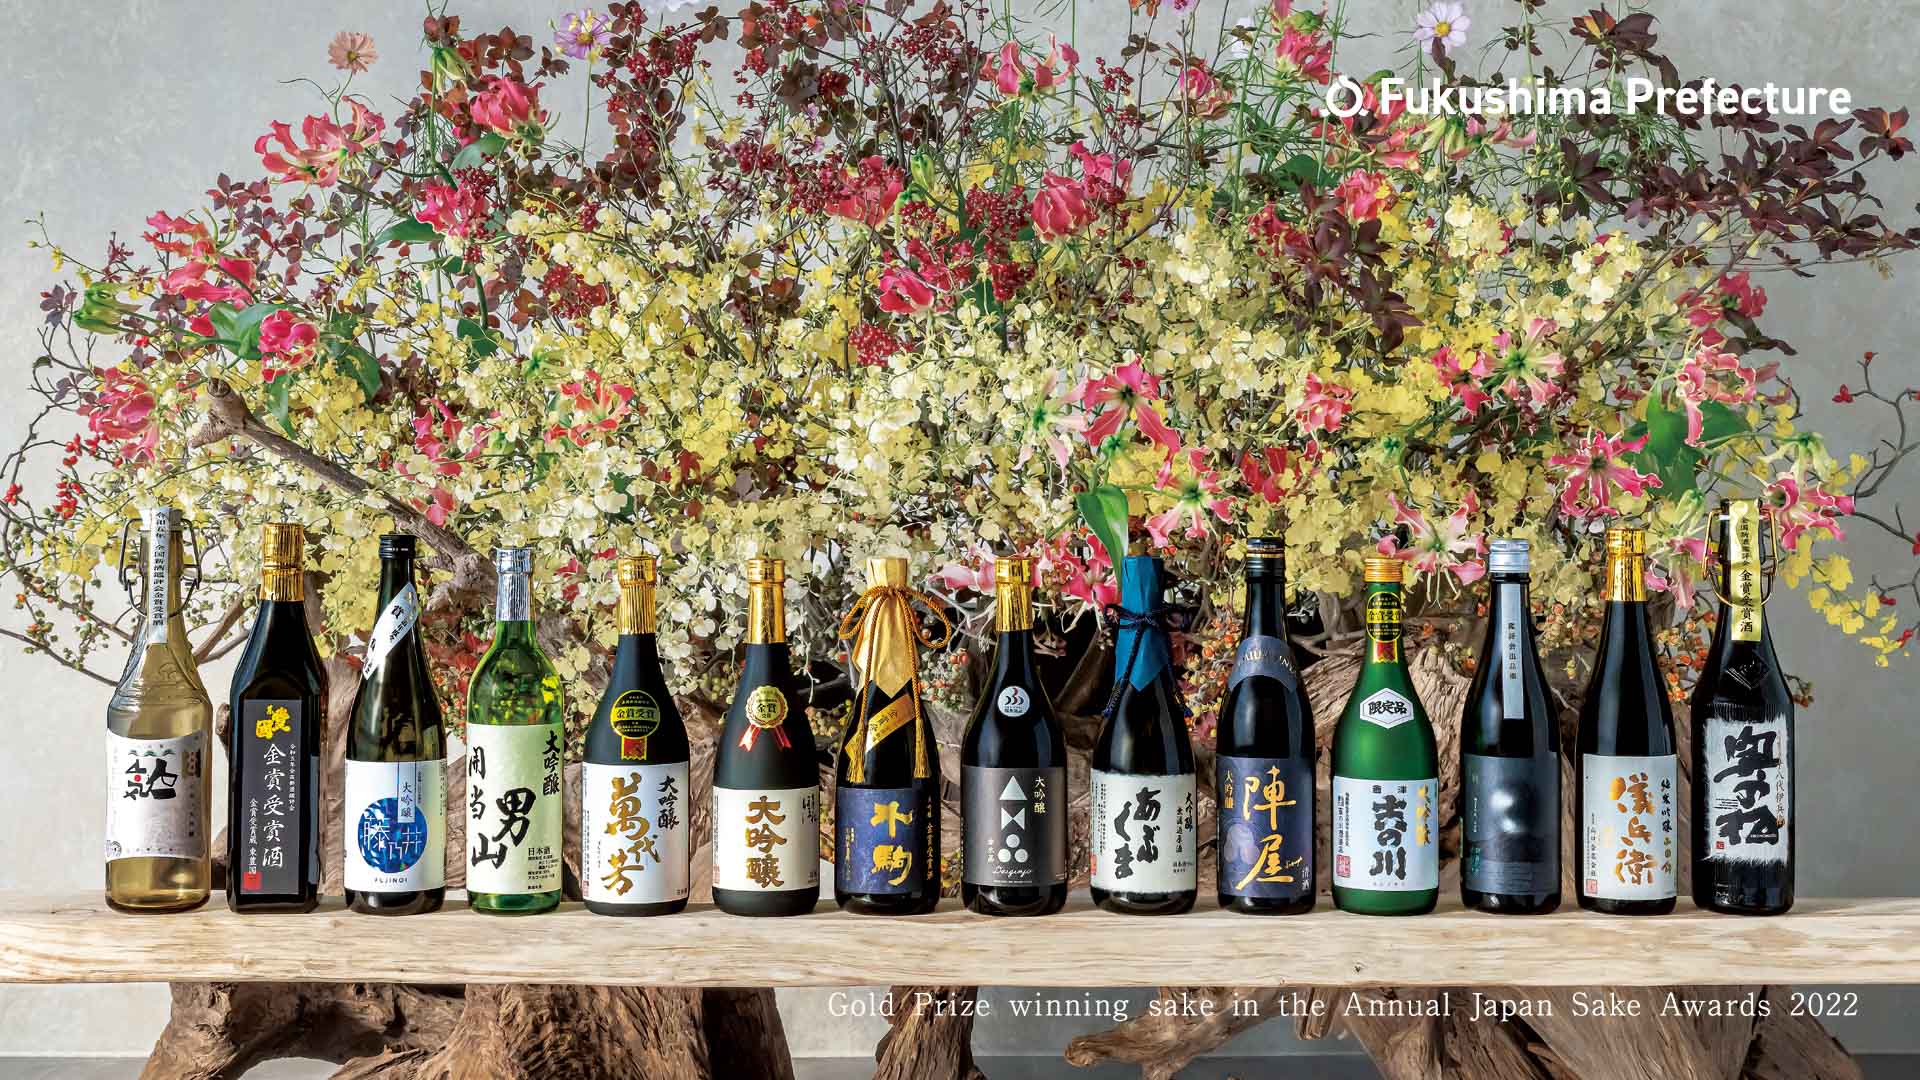 Gold Prize winning sake in the Annual Japan Sake Awards 2022